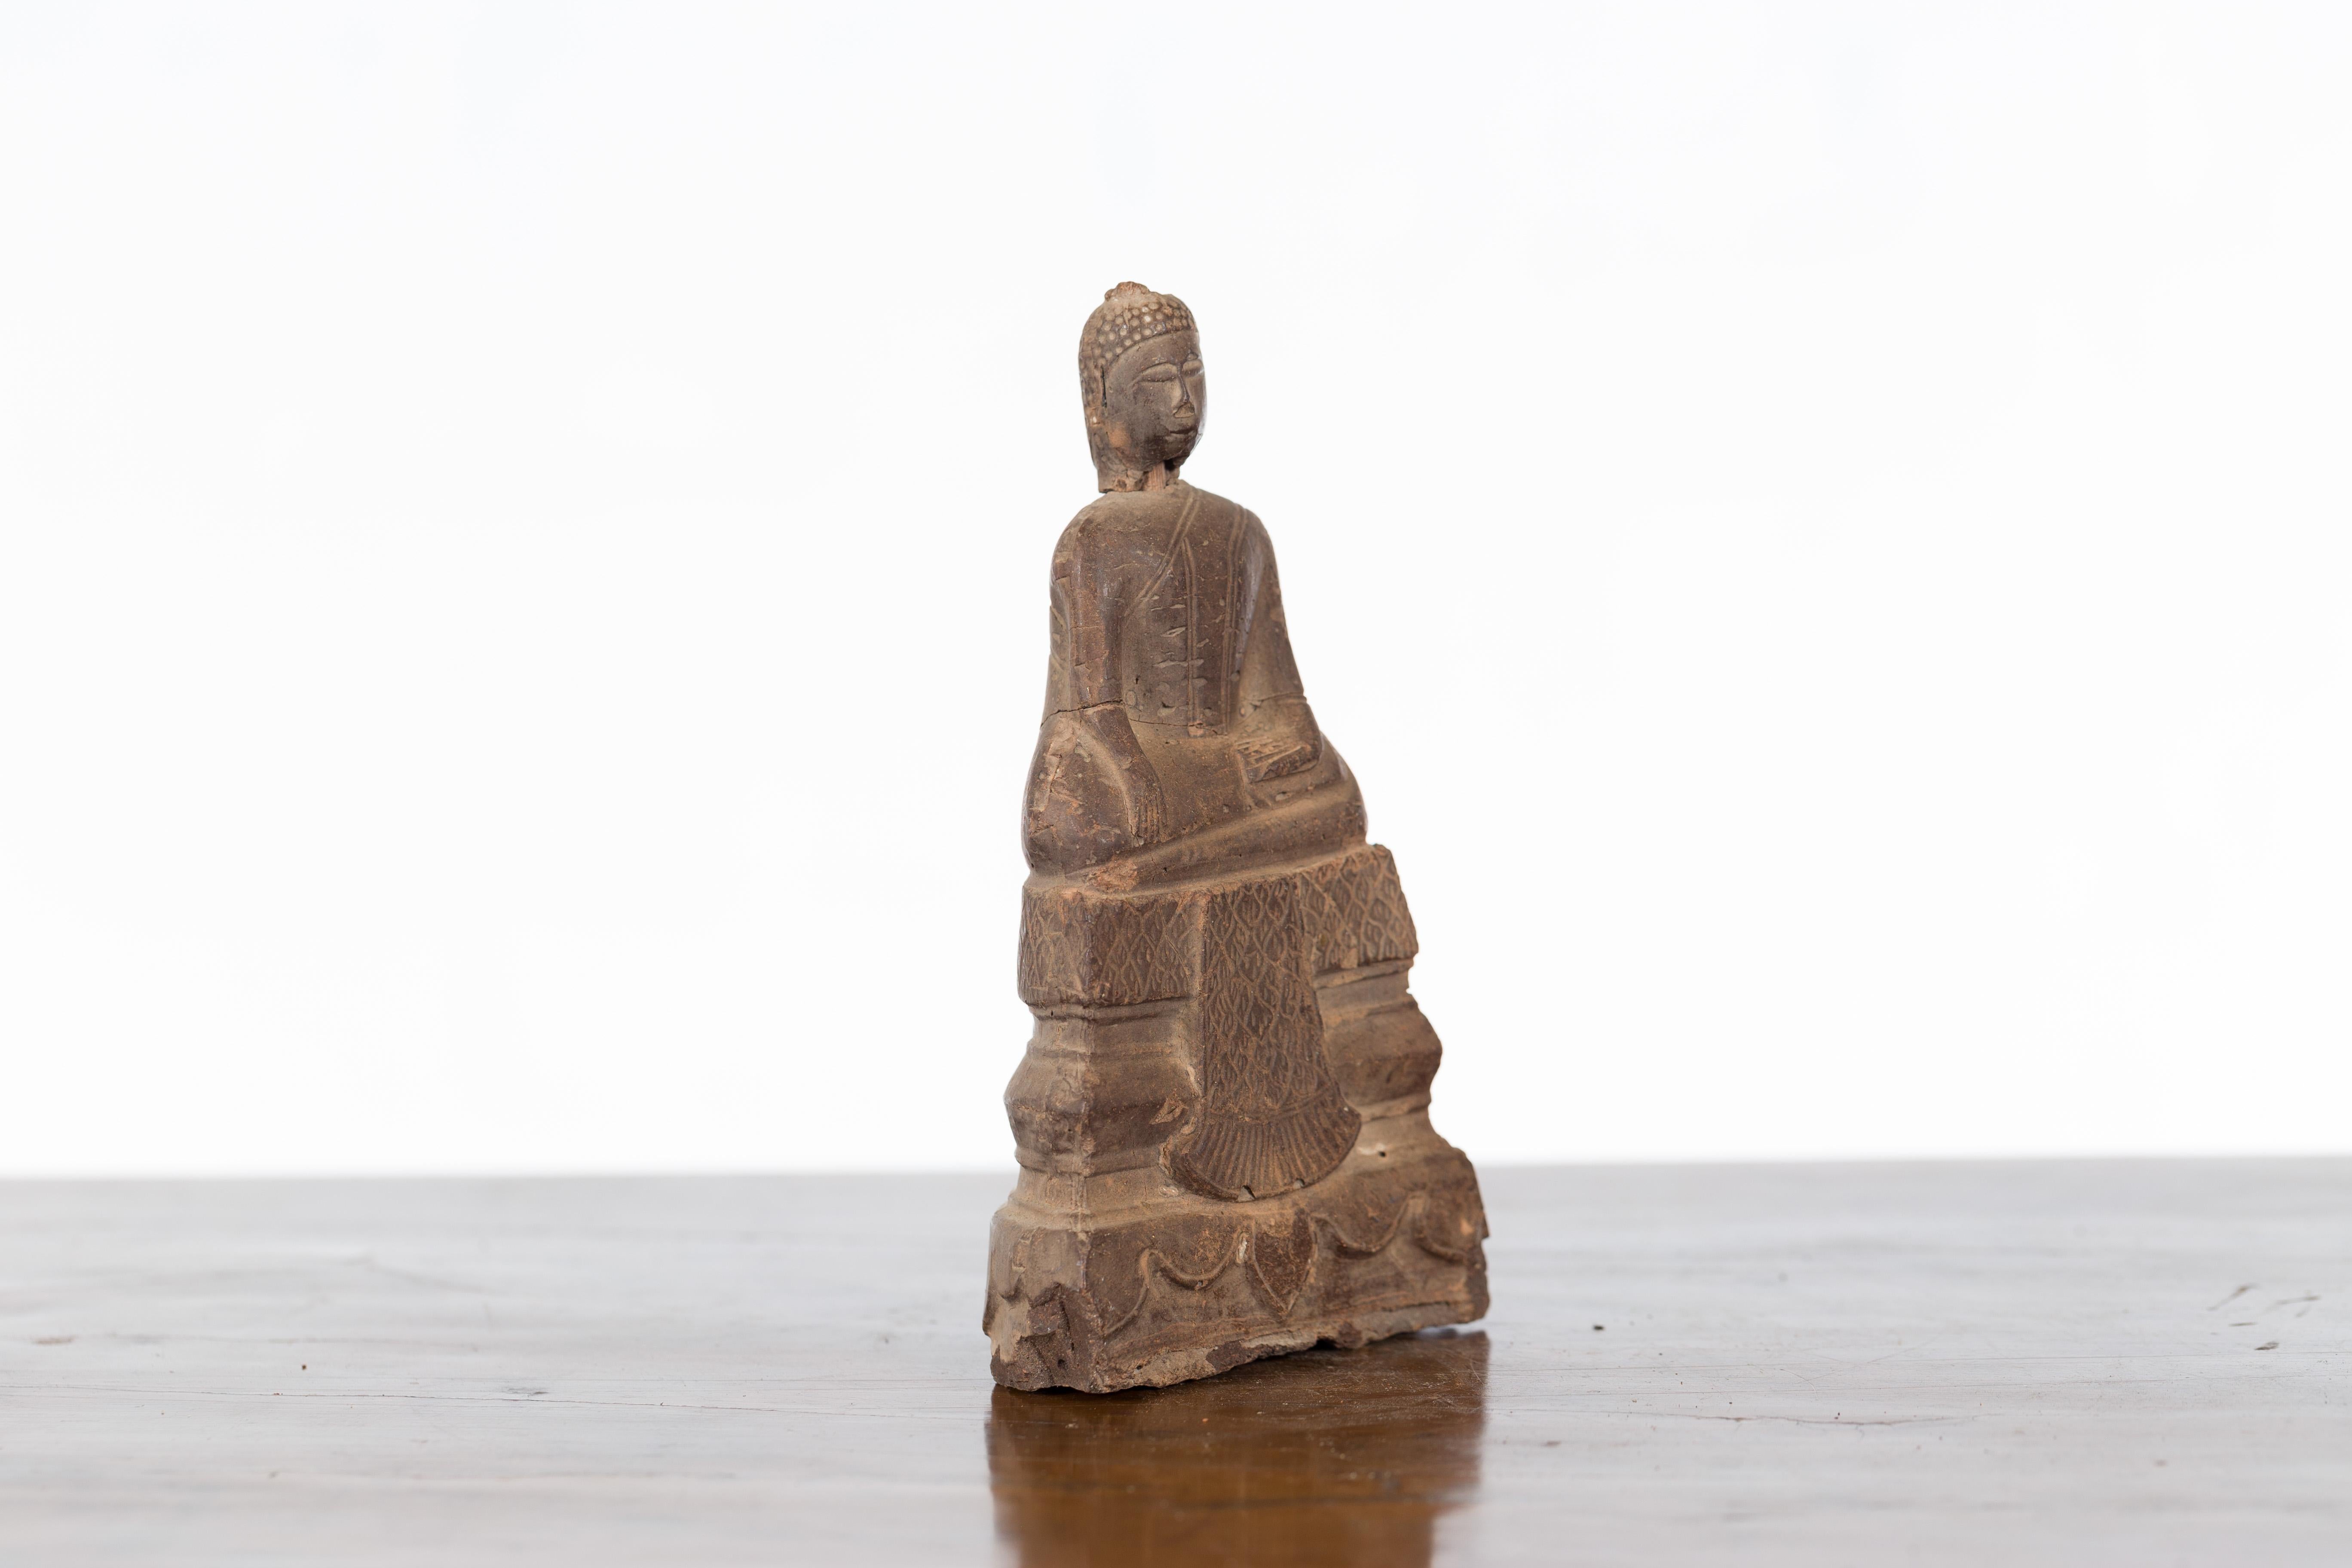 Petite Wooden Thai Ayutthaya Period Buddha Sculpture with Bhumisparsha Mudra 2